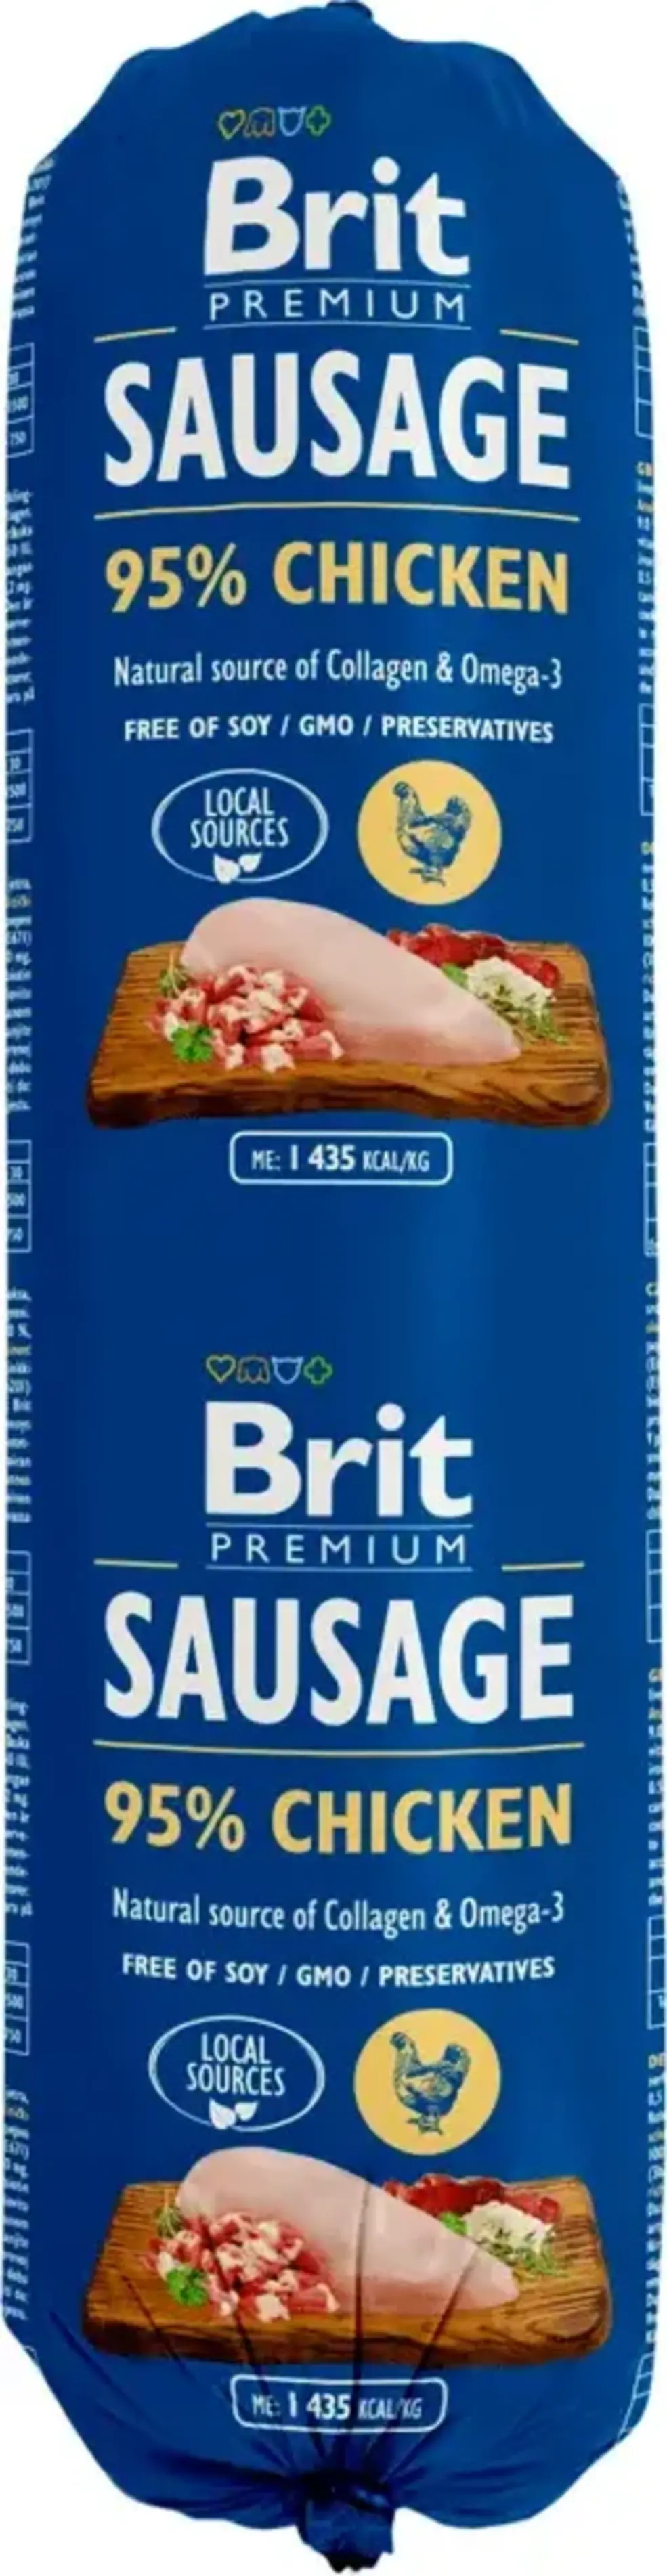 Brit Sausage Chicken 12 x 800 g